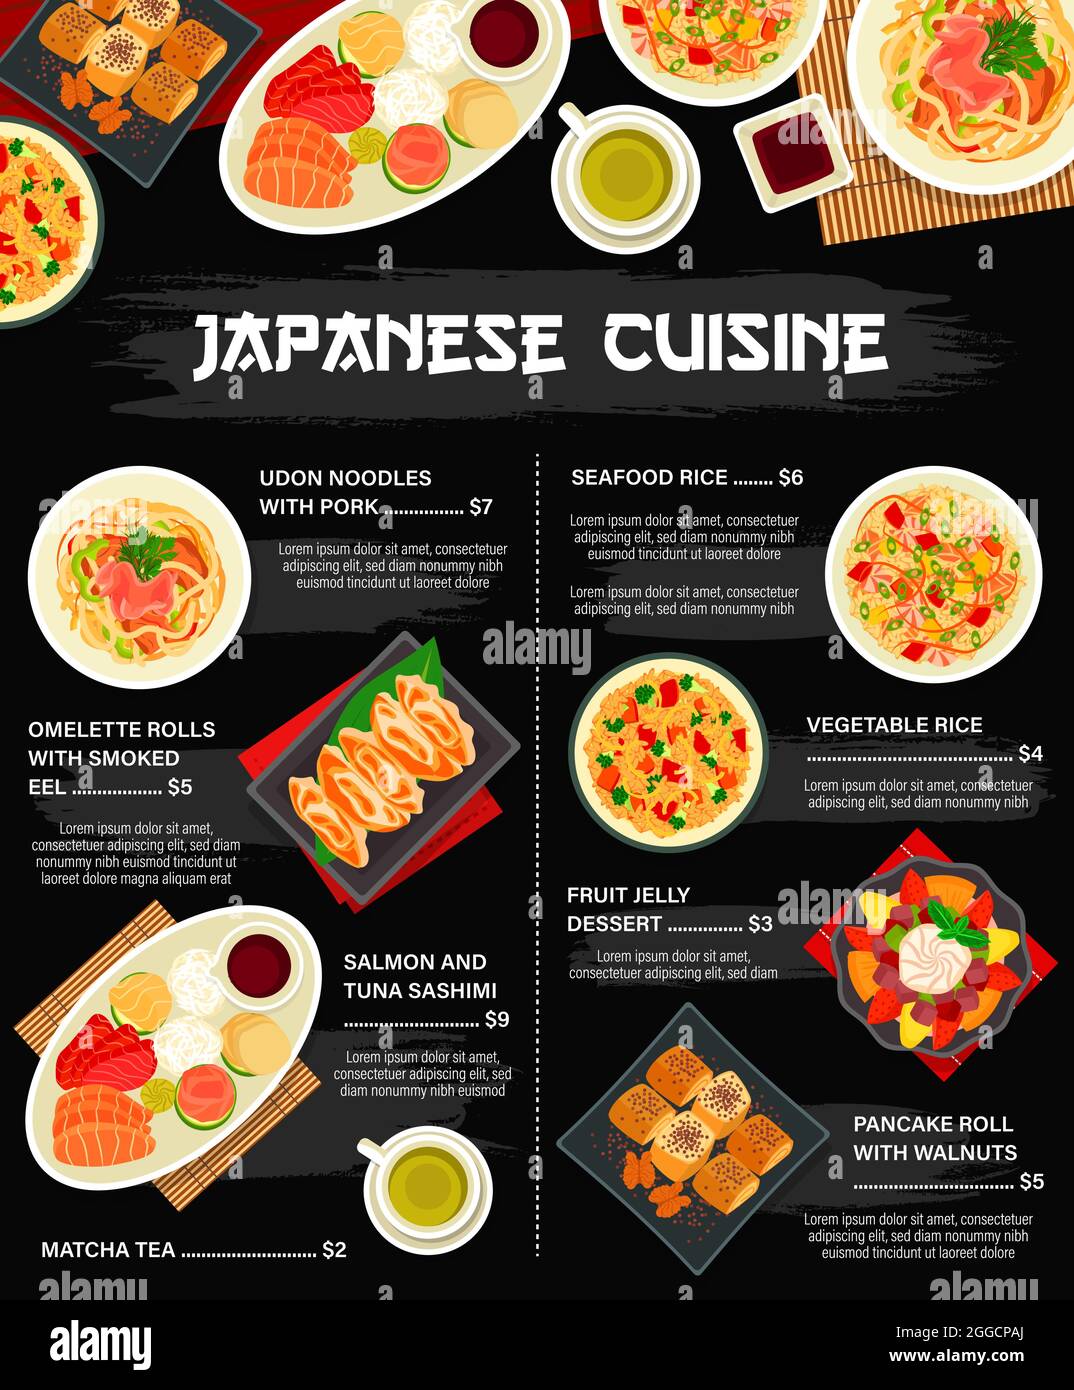 Bạn đã bao giờ thử ẩm thực Nhật Bản chưa? Đây là một trong những nền văn hóa ẩm thực phát triển nhất thế giới. Hãy cám nhận sự phong phú về món ăn và lẻ thời của hành trình ẩm thực Nhật Bản bằng cách nhấn vào hình ảnh. 